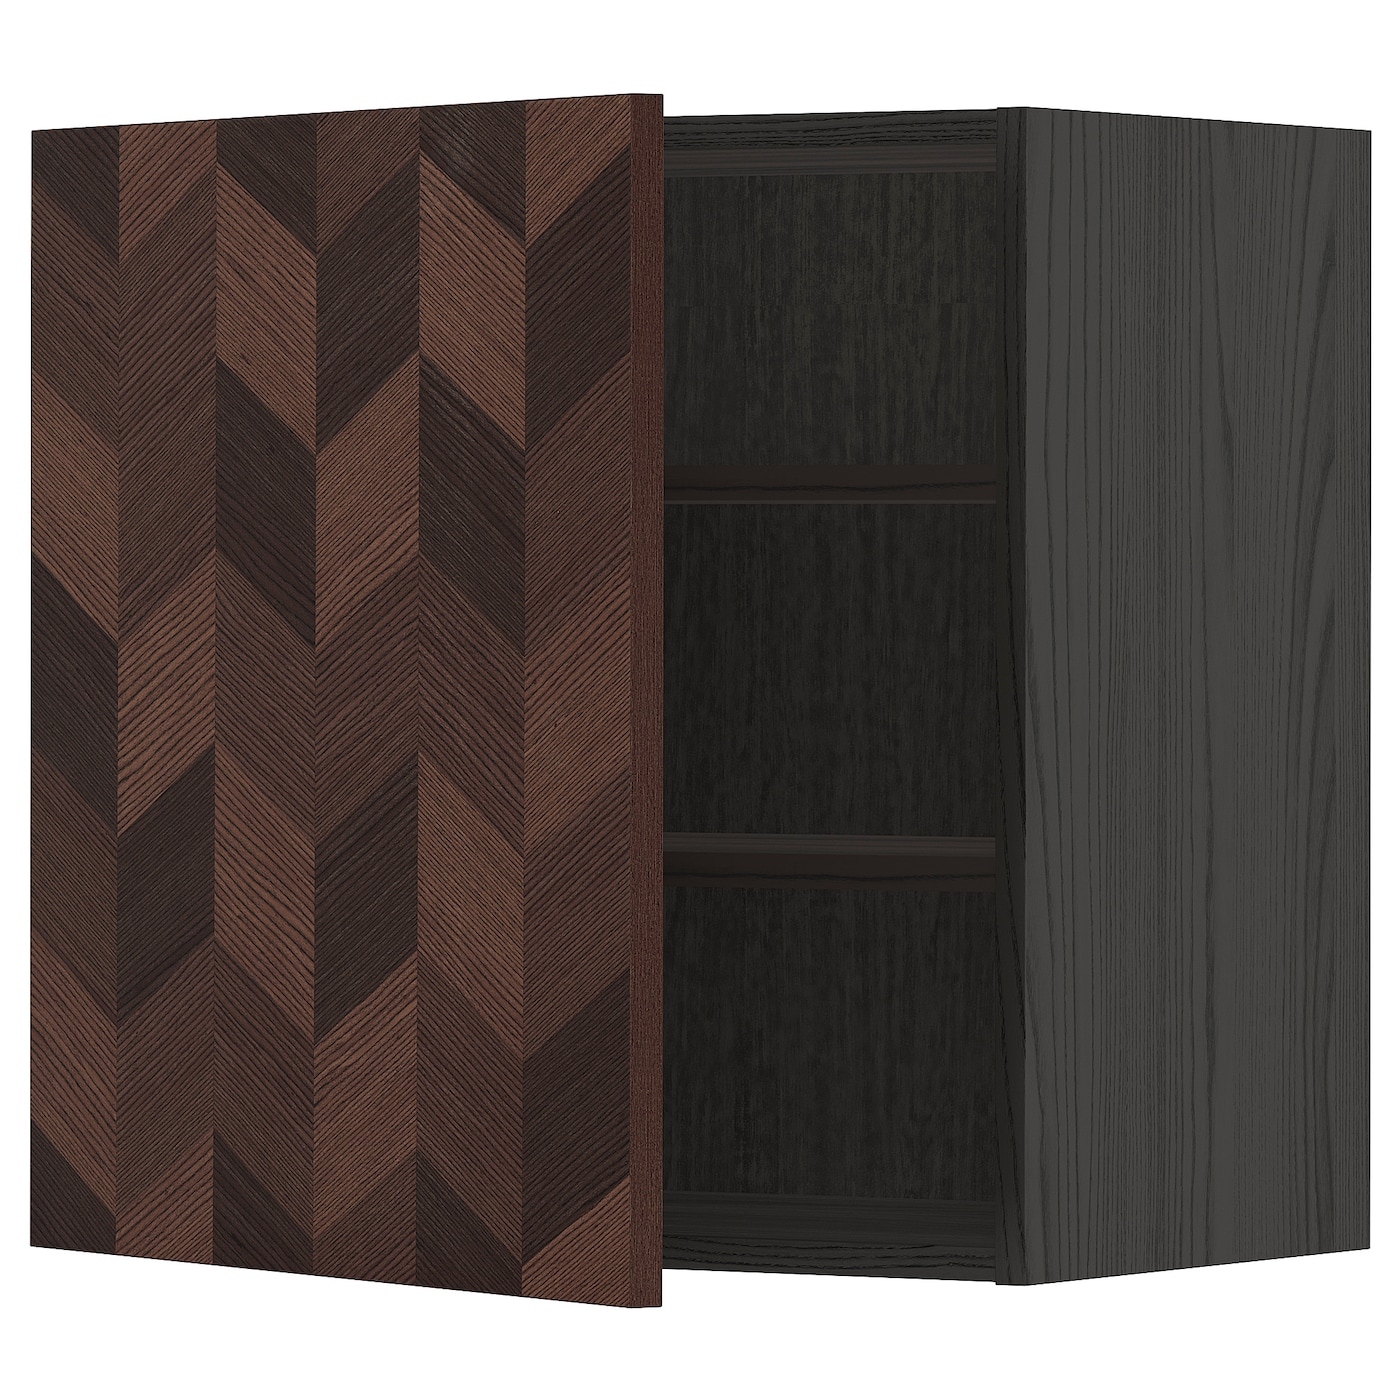 Навесной шкаф с полкой - METOD IKEA/ МЕТОД ИКЕА, 60х60 см, черный/коричневый